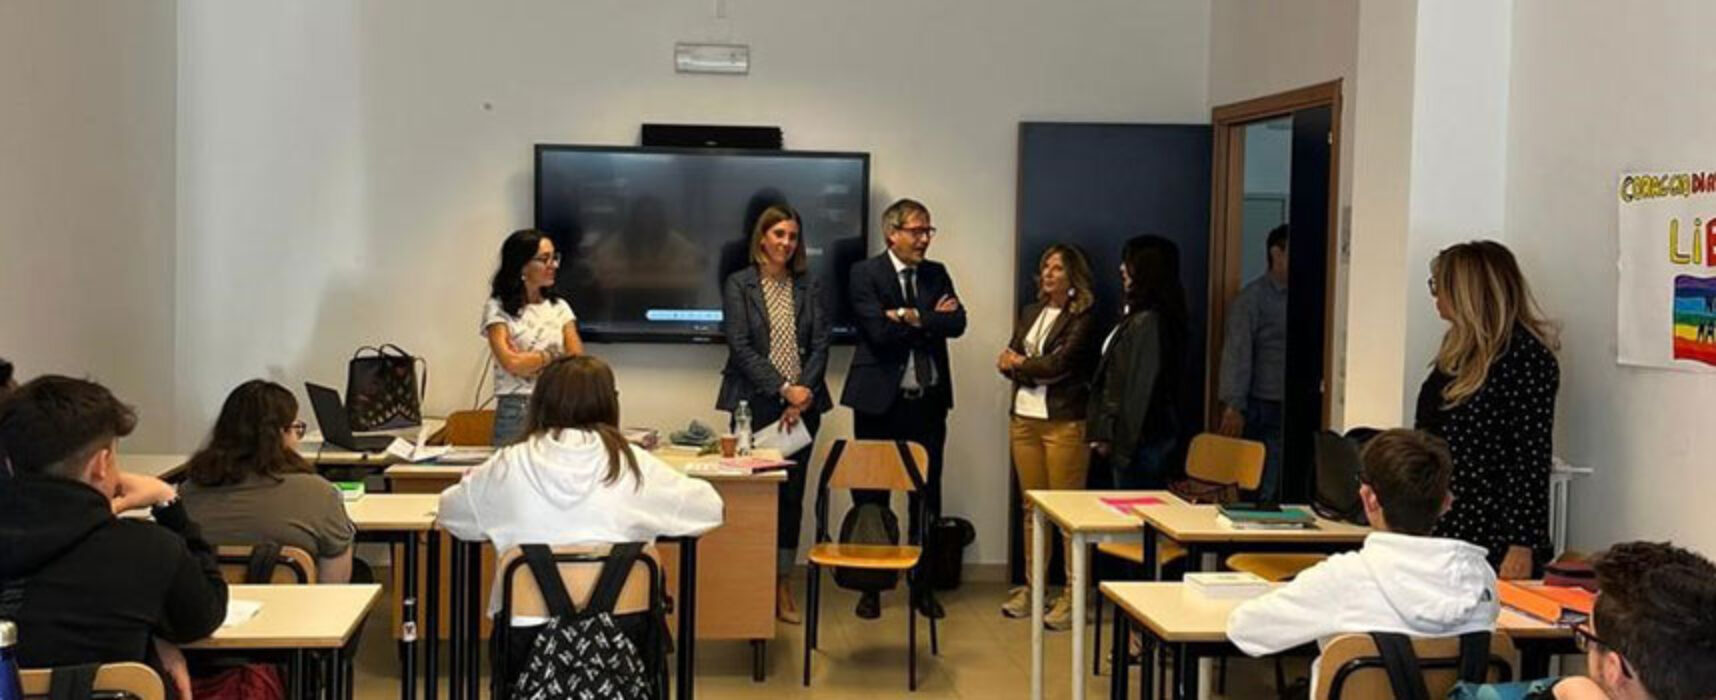 L’Istituto Sergio Cosmai aderisce alla Festa dei Lettori, ospiti Sindaco e Assessori